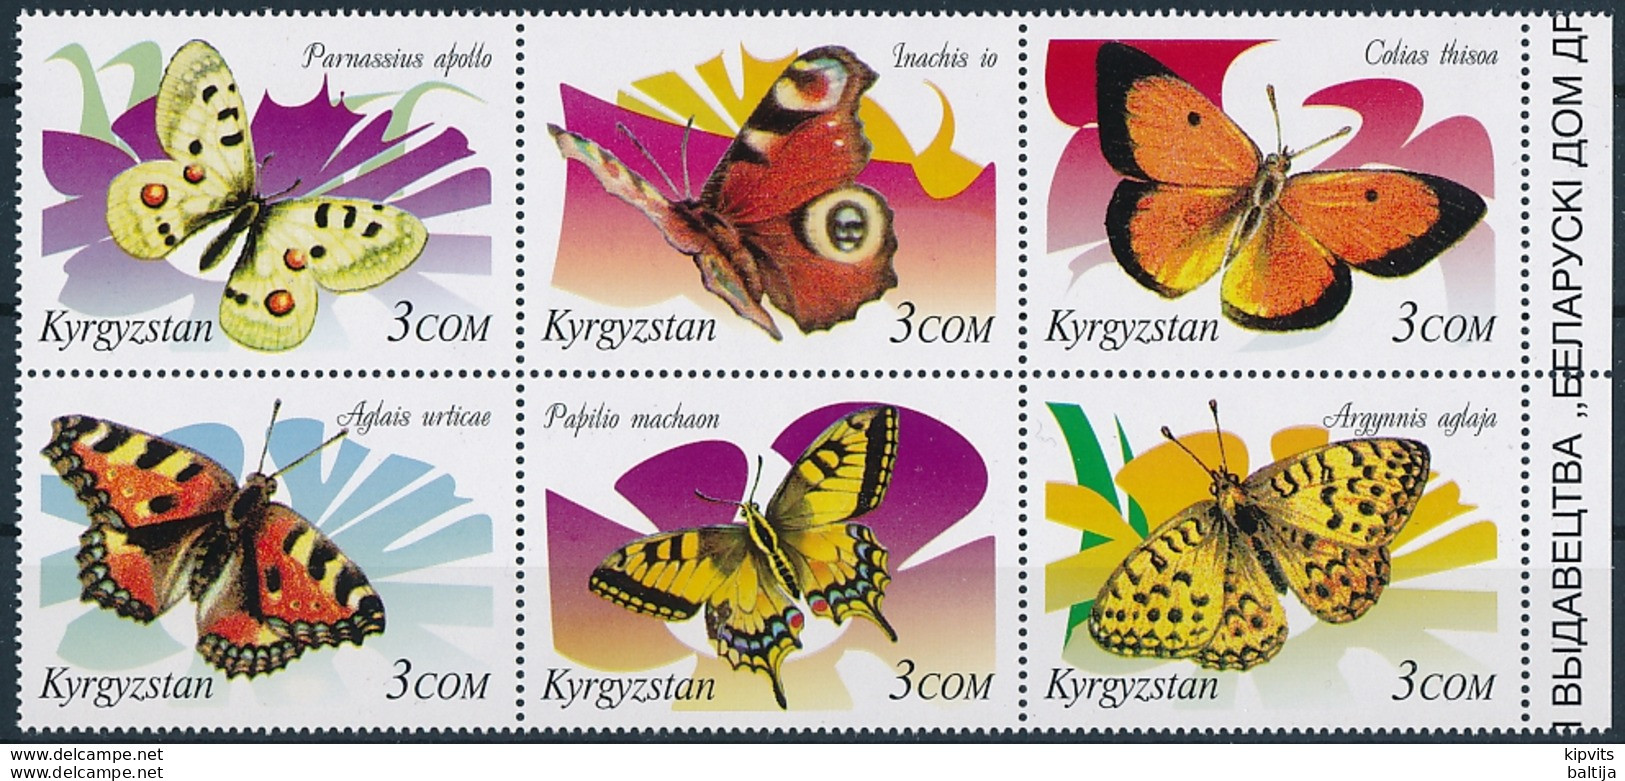 Mi 213-18 MNH ** / Butterflies, Parnassius Apollo Papilio Machaon Colias Thisoa Argynnis Aglaja Aglais Io Aglais Urticae - Kyrgyzstan